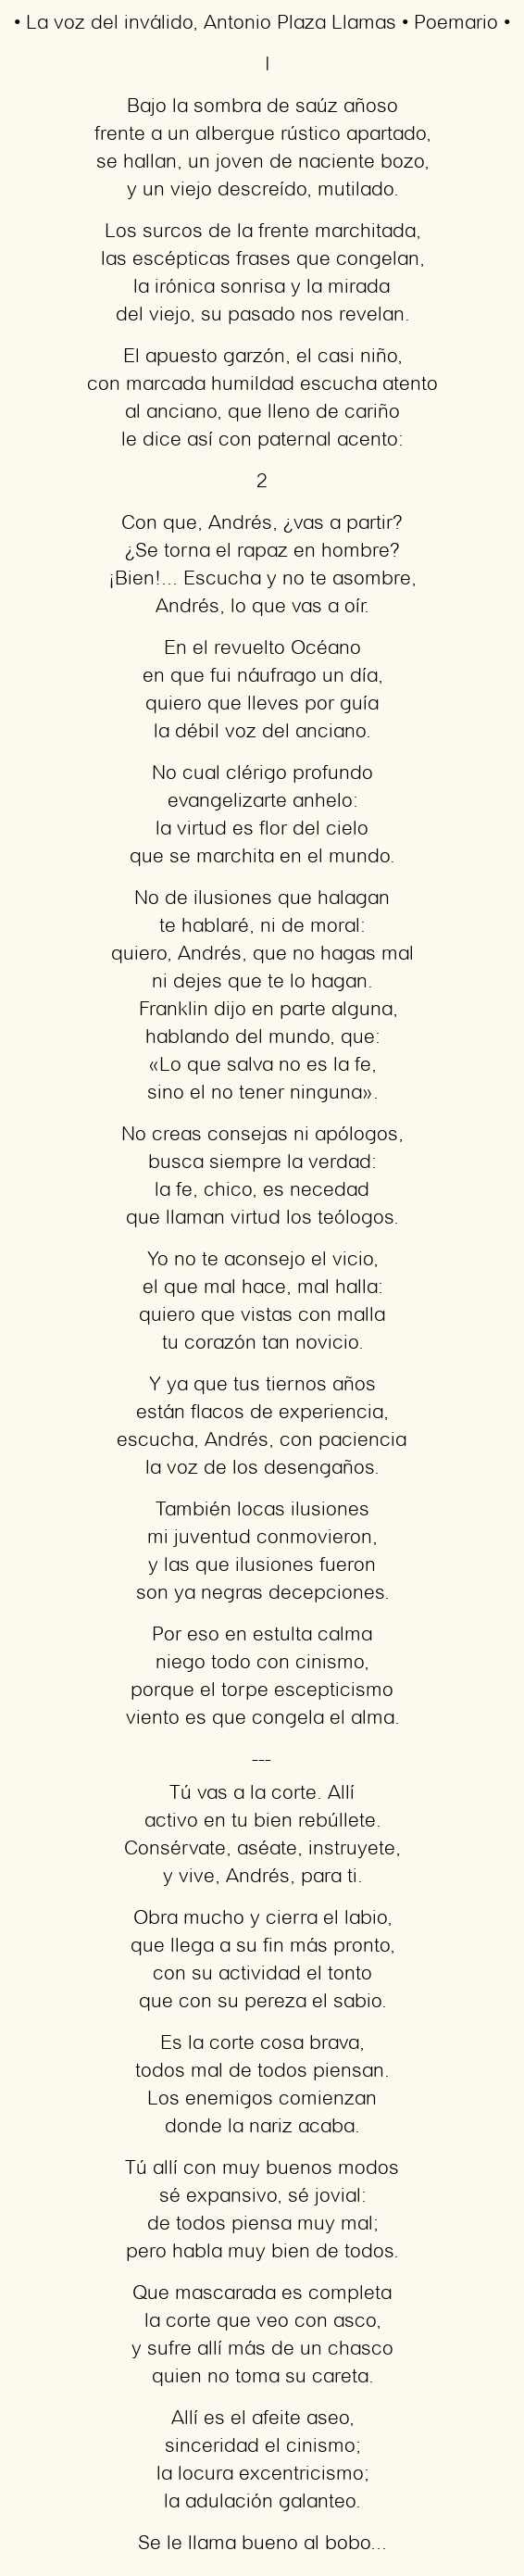 Imagen con el poema La voz del inválido, por Antonio Plaza Llamas